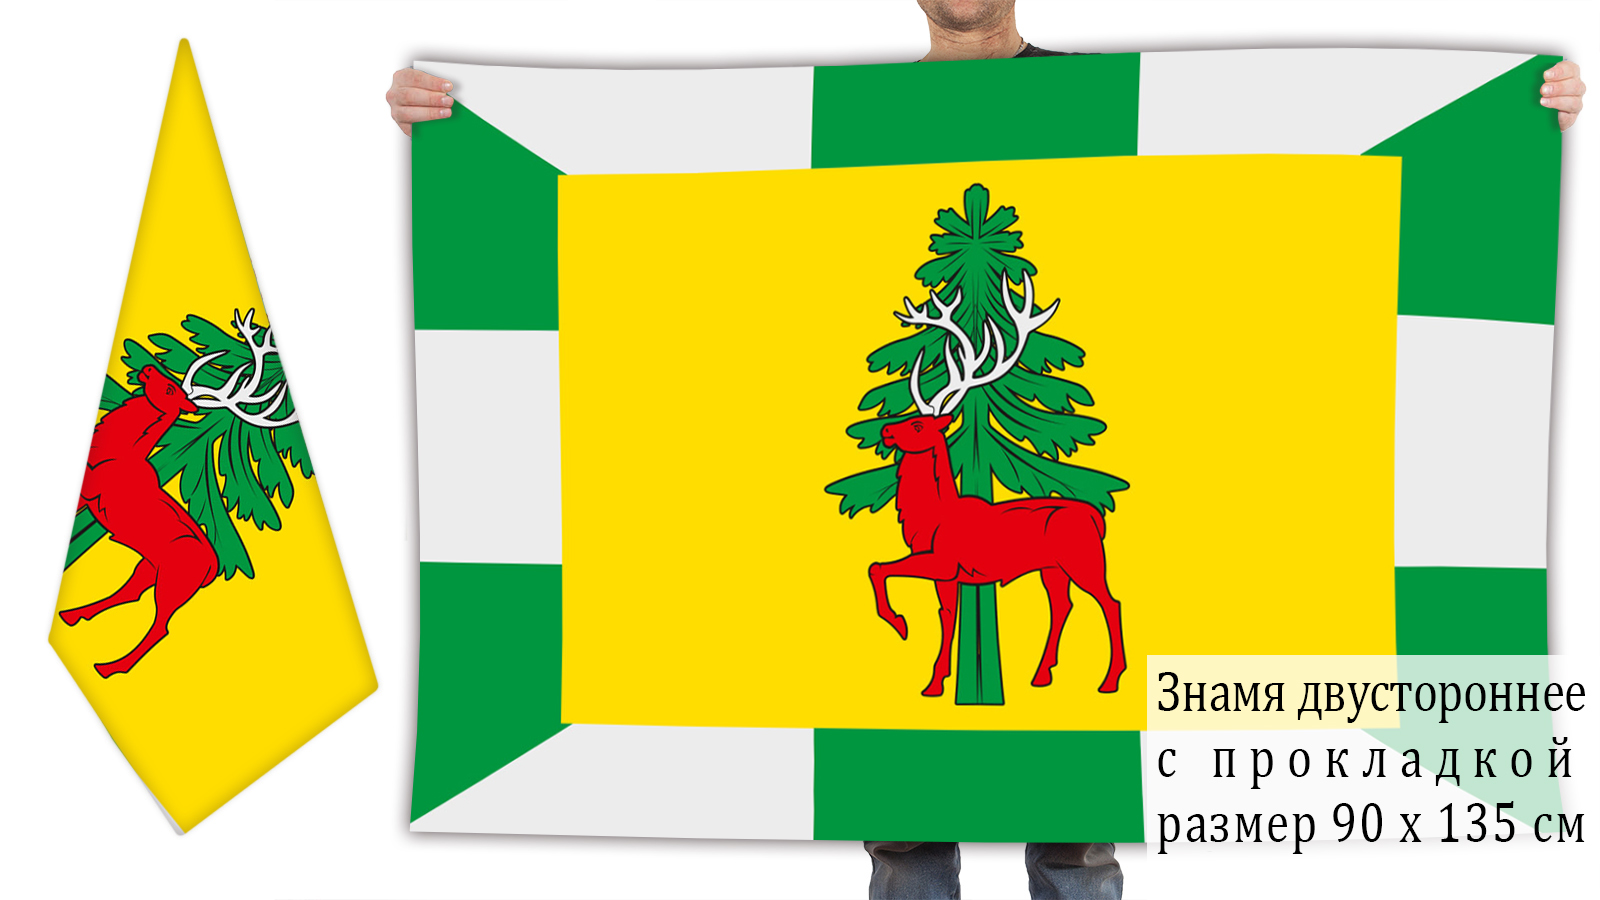 Двусторонний флаг Елецкого района